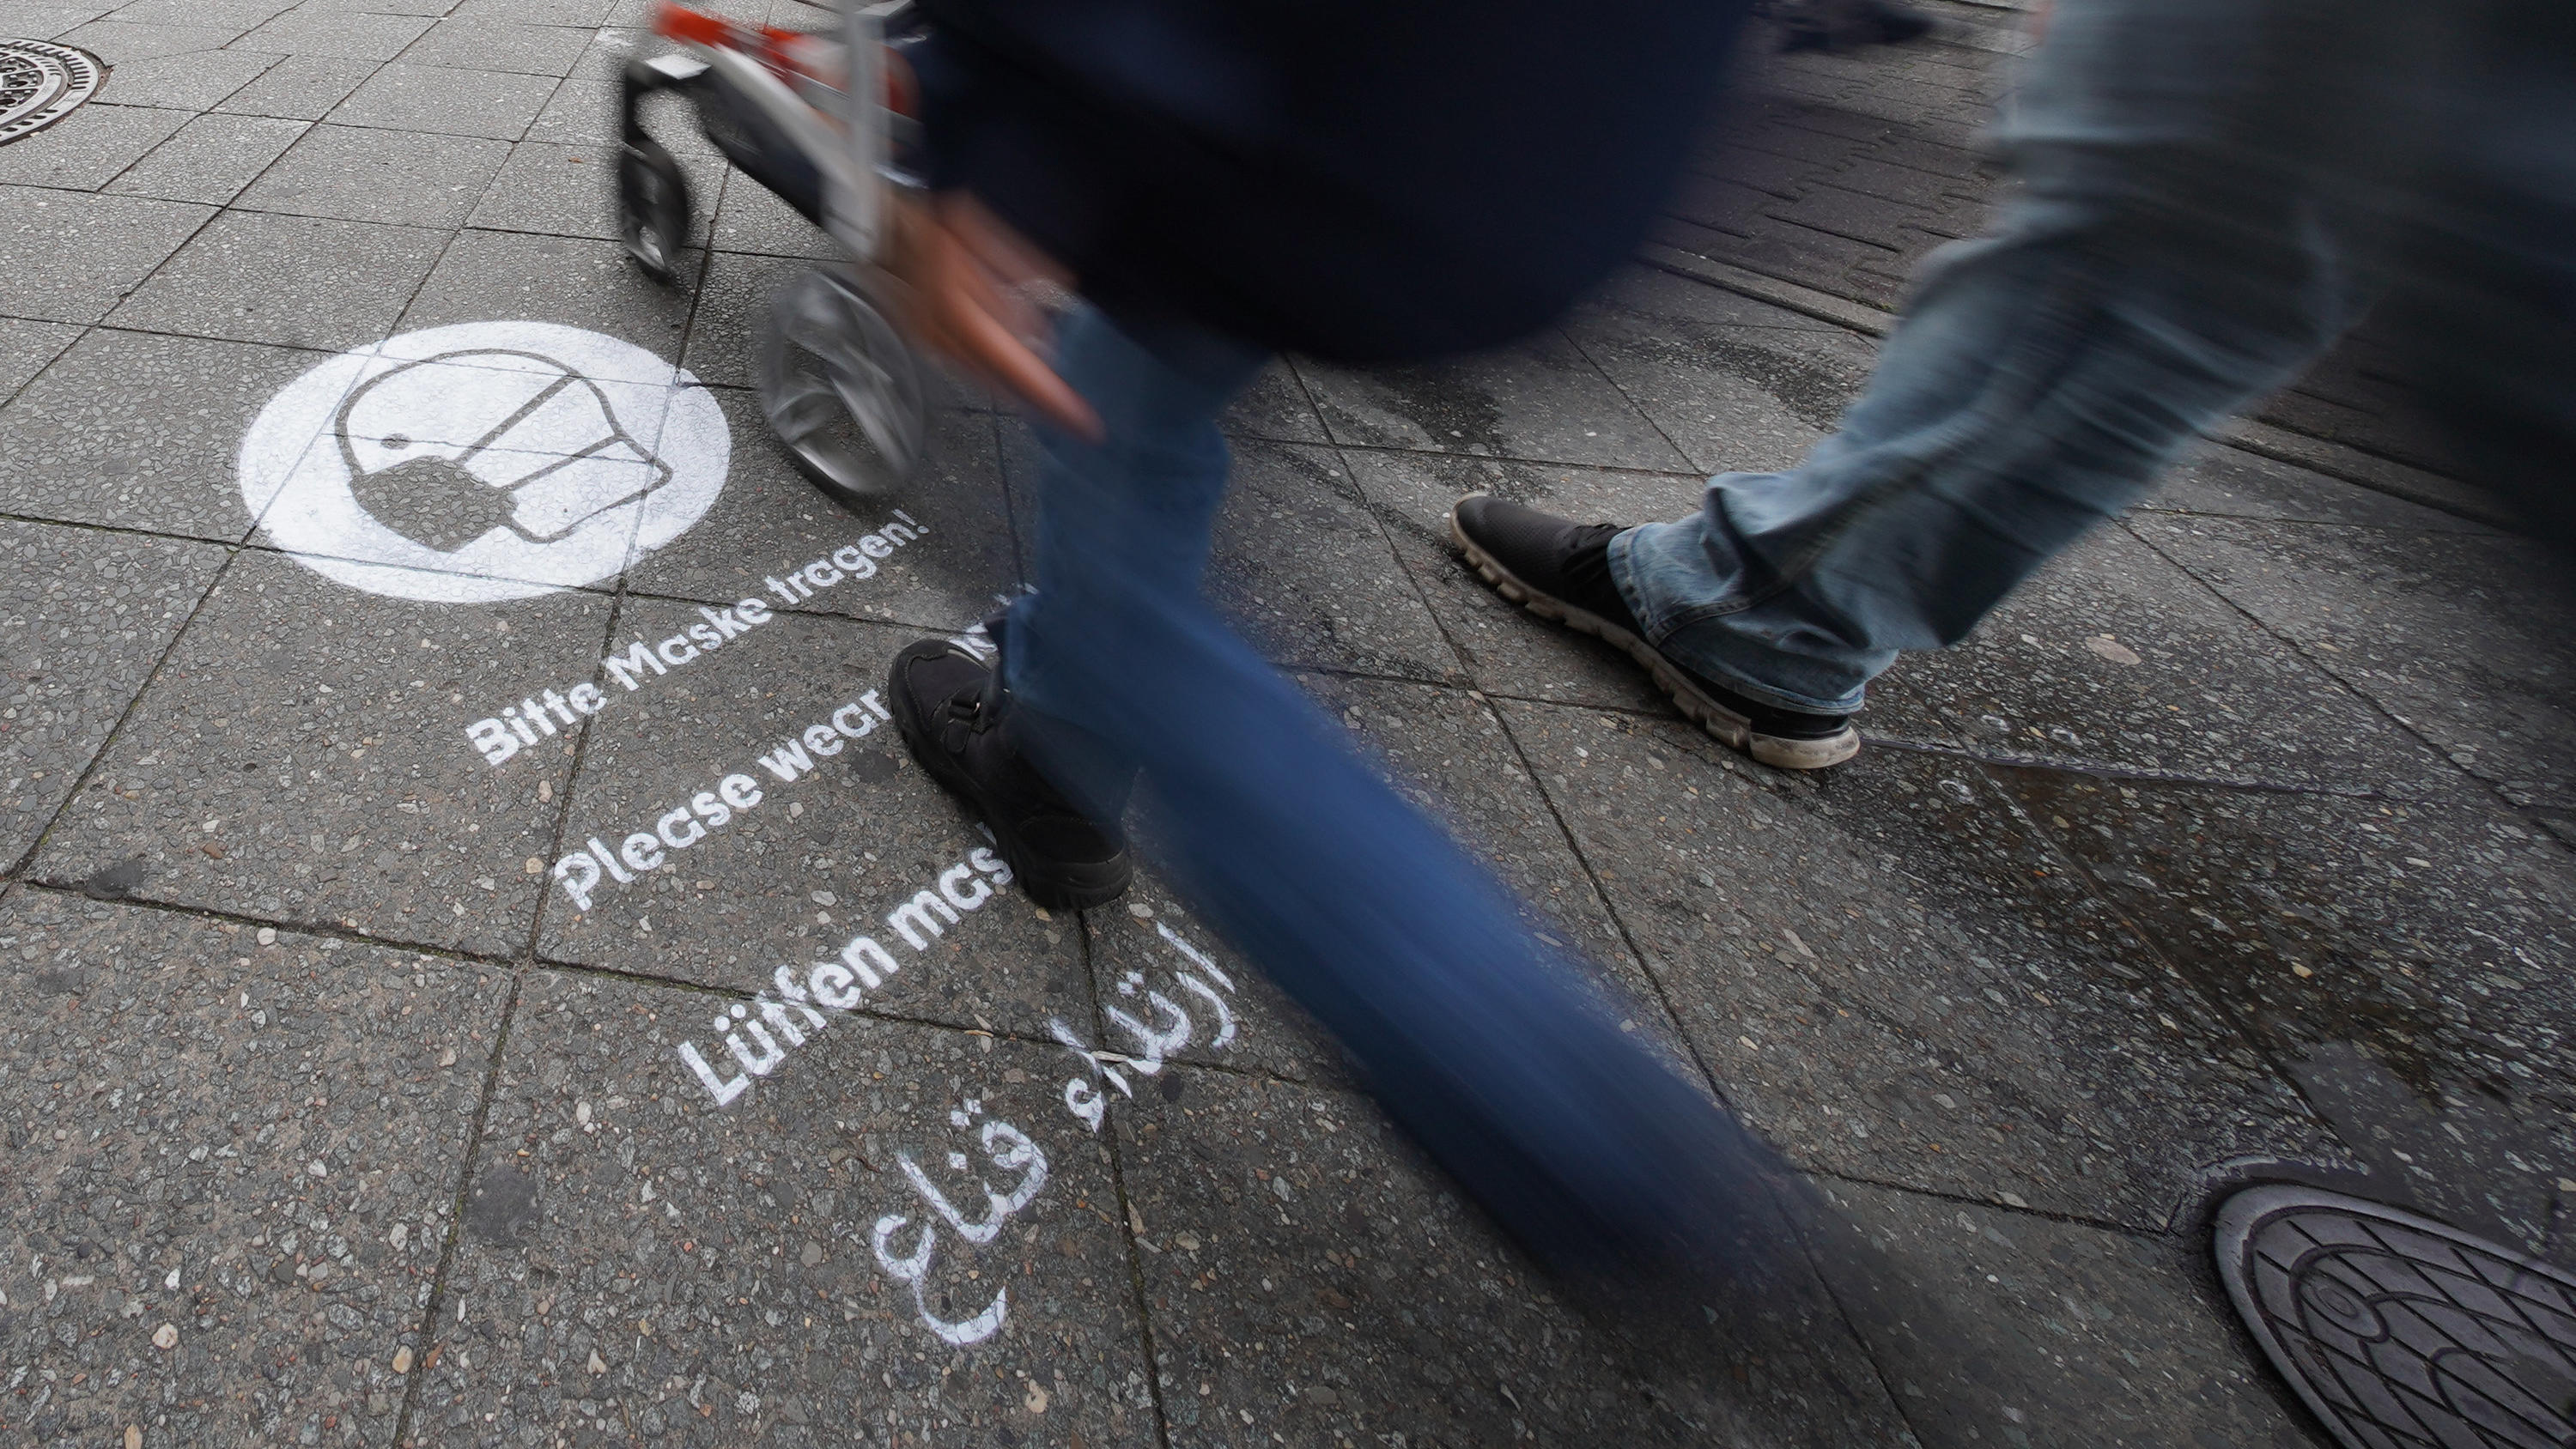 24.10.2020, Berlin: Ein Graffiti mit dem Hinweis, dass eine Maske zu tragen ist, ist auf dem Gehweg der Karl-Marx-Straße gesprüht. Zur Eindämmung der Corona-Pandemie wird die Maskenpflicht in Berlin ausgeweitet. Ab sofort gilt dies auch für belebte E